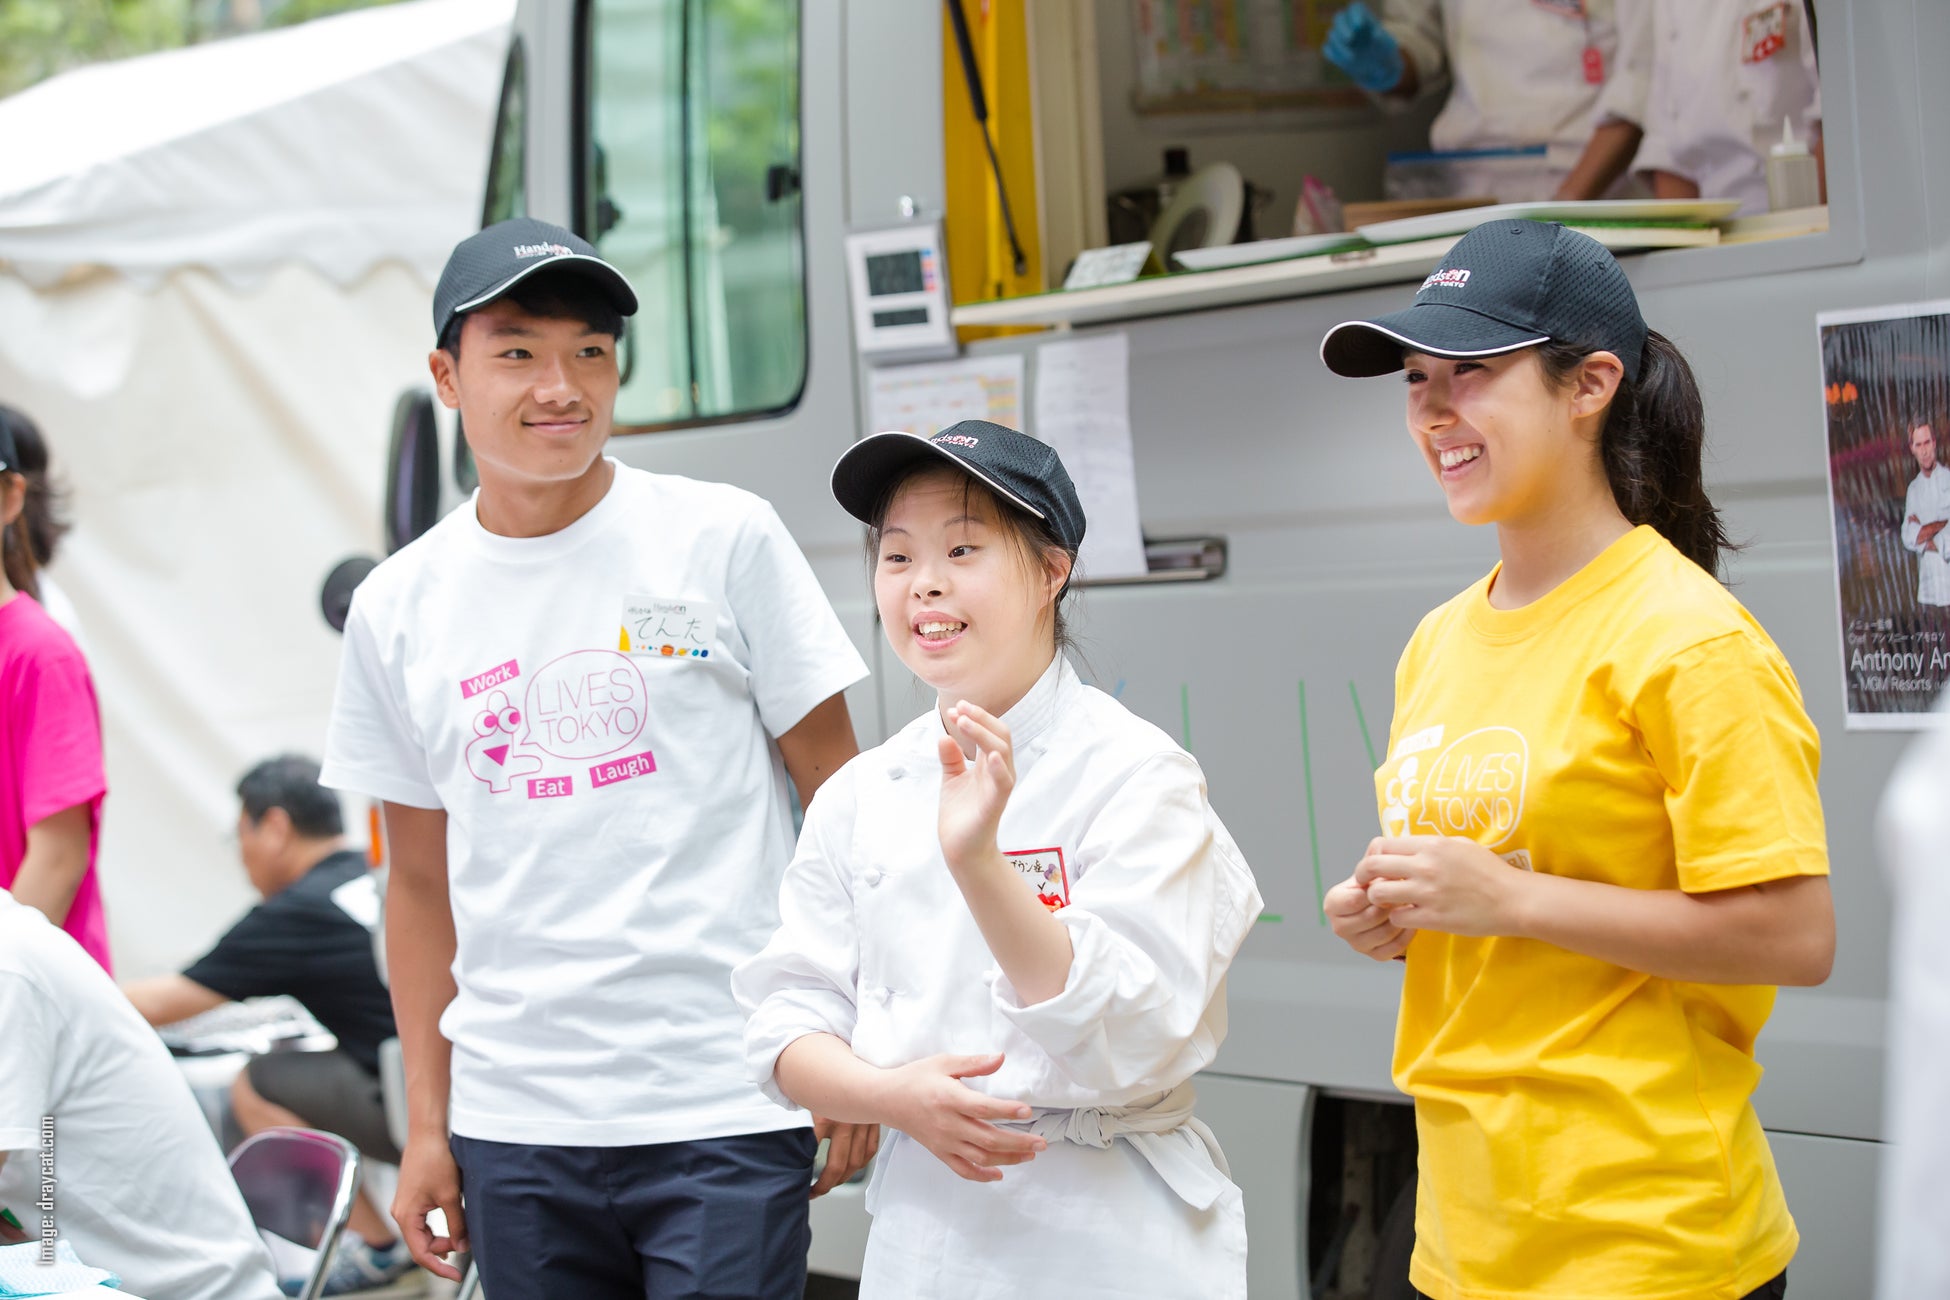 【DEAN & DELUCA】ボランティア団体認定NPO『ハンズオン東京』のLIVES キッチンプロジェクトに参画、フードトラックにてランチボックスを販売開始いたします。のサブ画像1